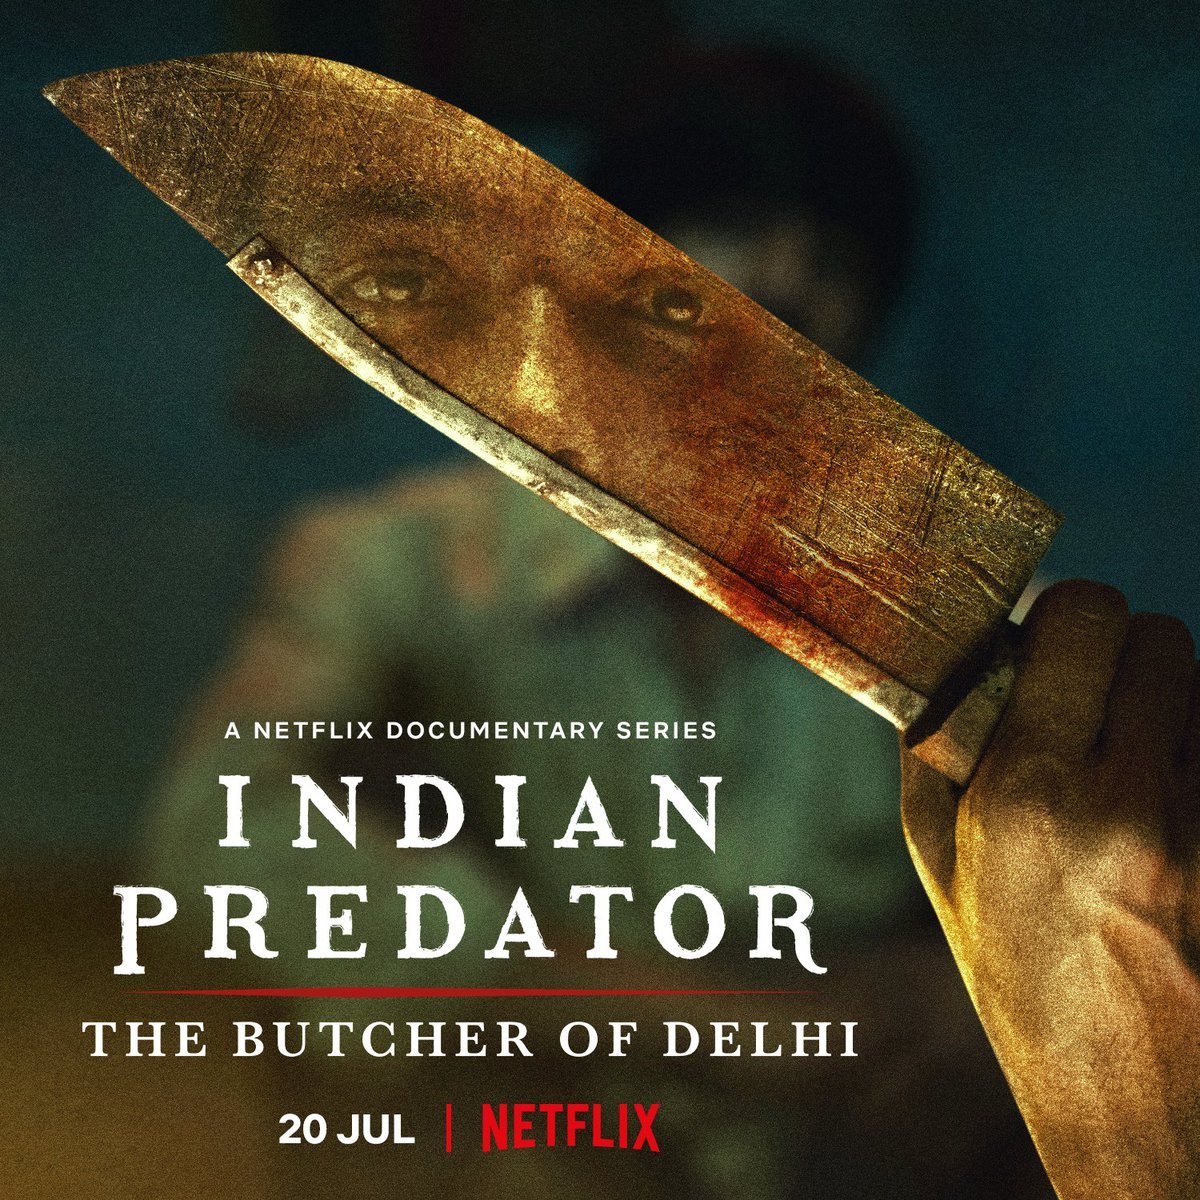 รีวิวสารคดี Indian Predator (2022) ฆาตกรต่อเนื่องของเดลี ที่เปลี่ยนเมืองหลวงของอินเดียให้ตกอยู่ในความหวาดกลัว